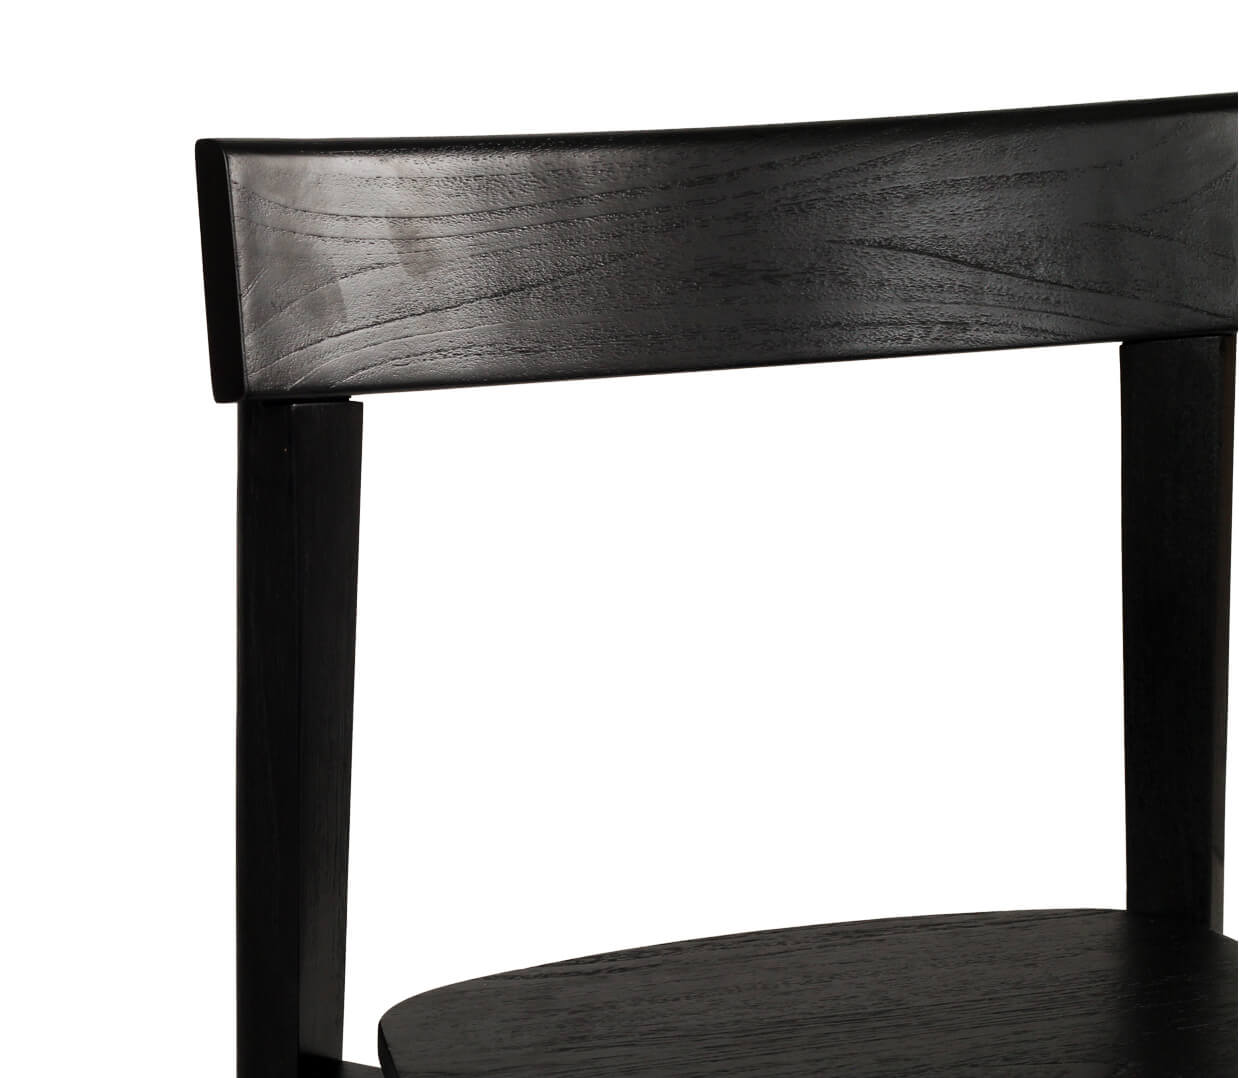 Nebraska | Black Natural Coastal Wooden Dining Chair | Black